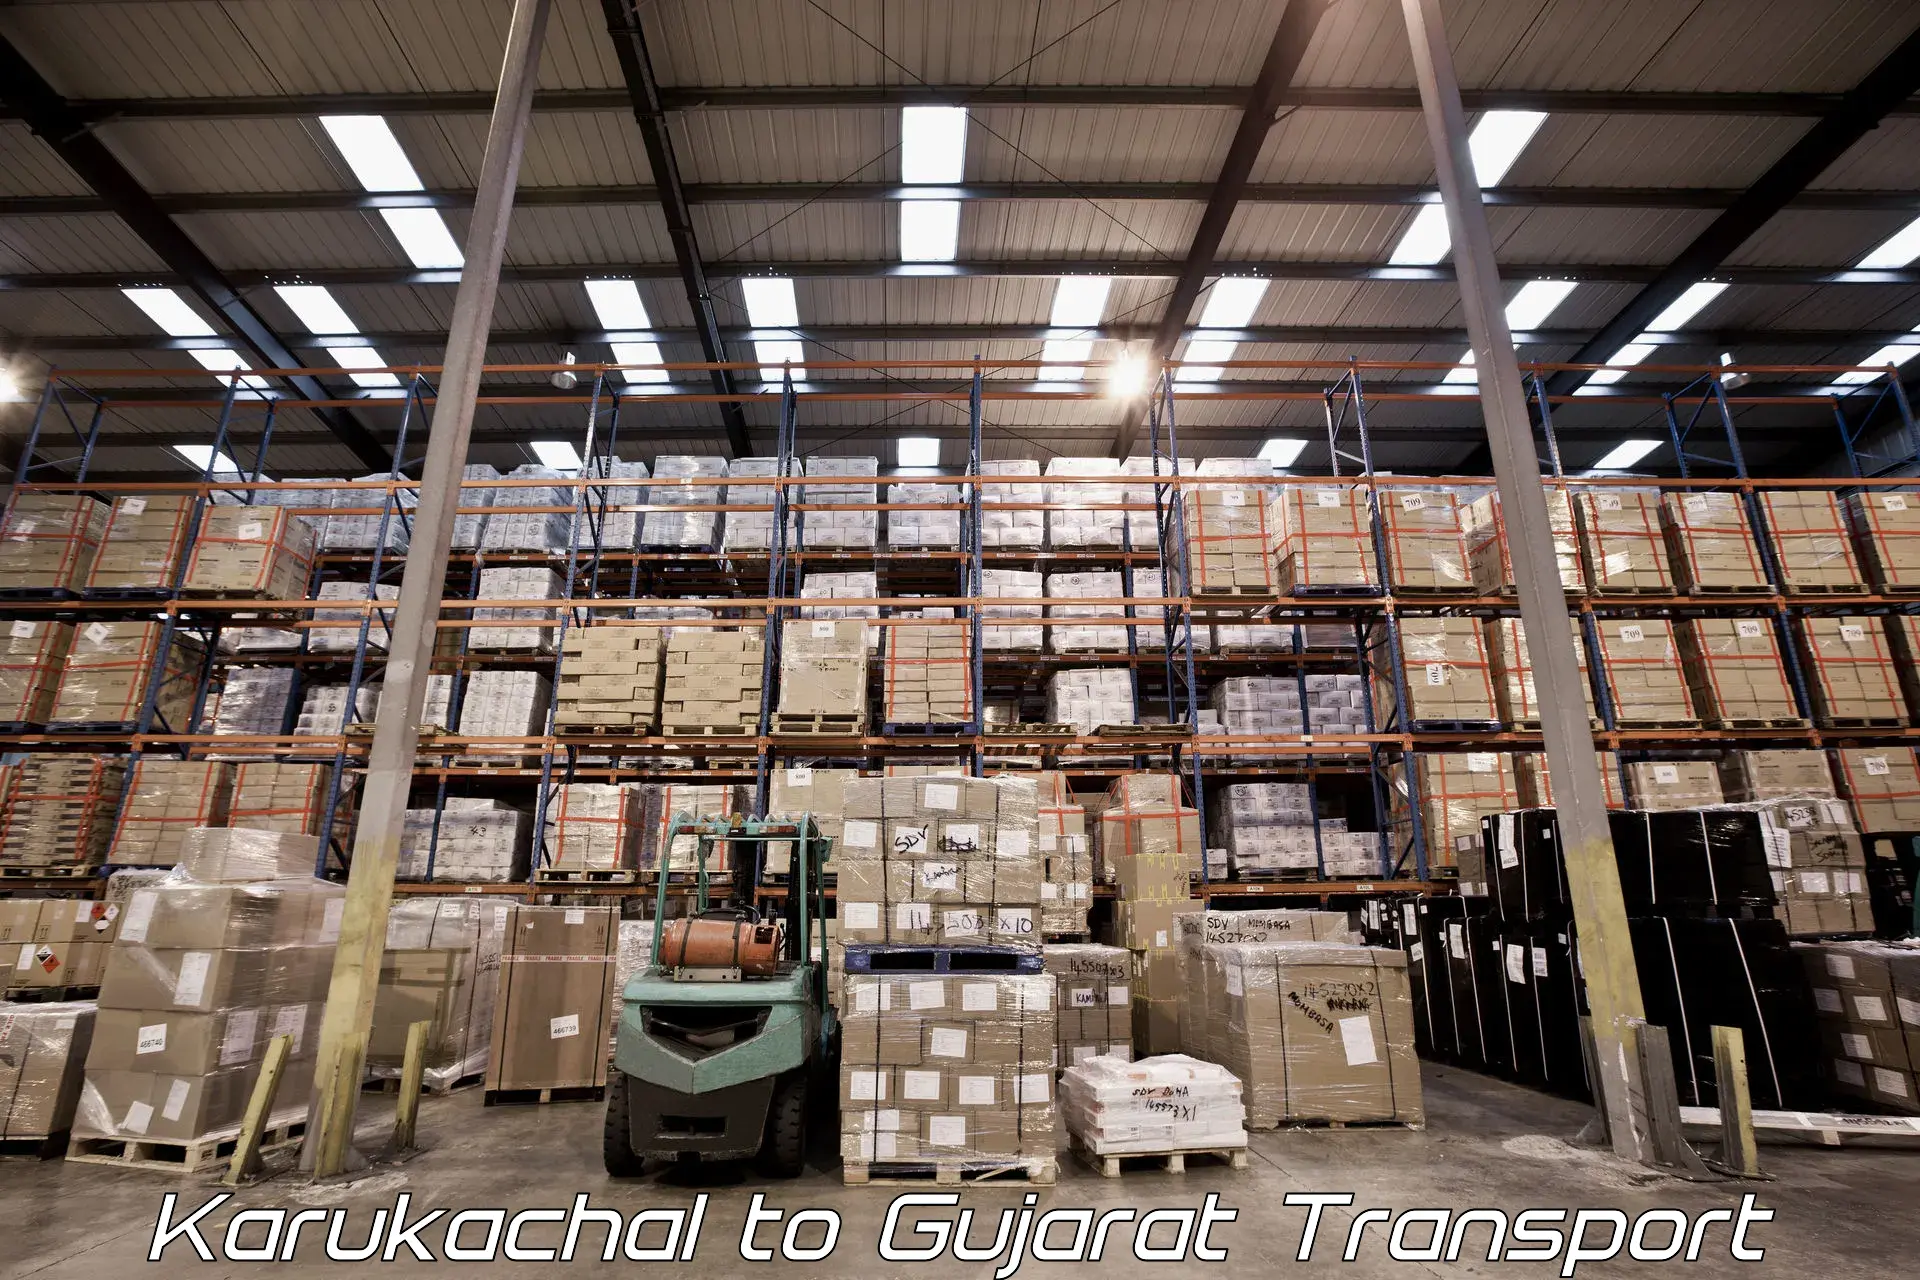 Cargo transport services Karukachal to Junagadh